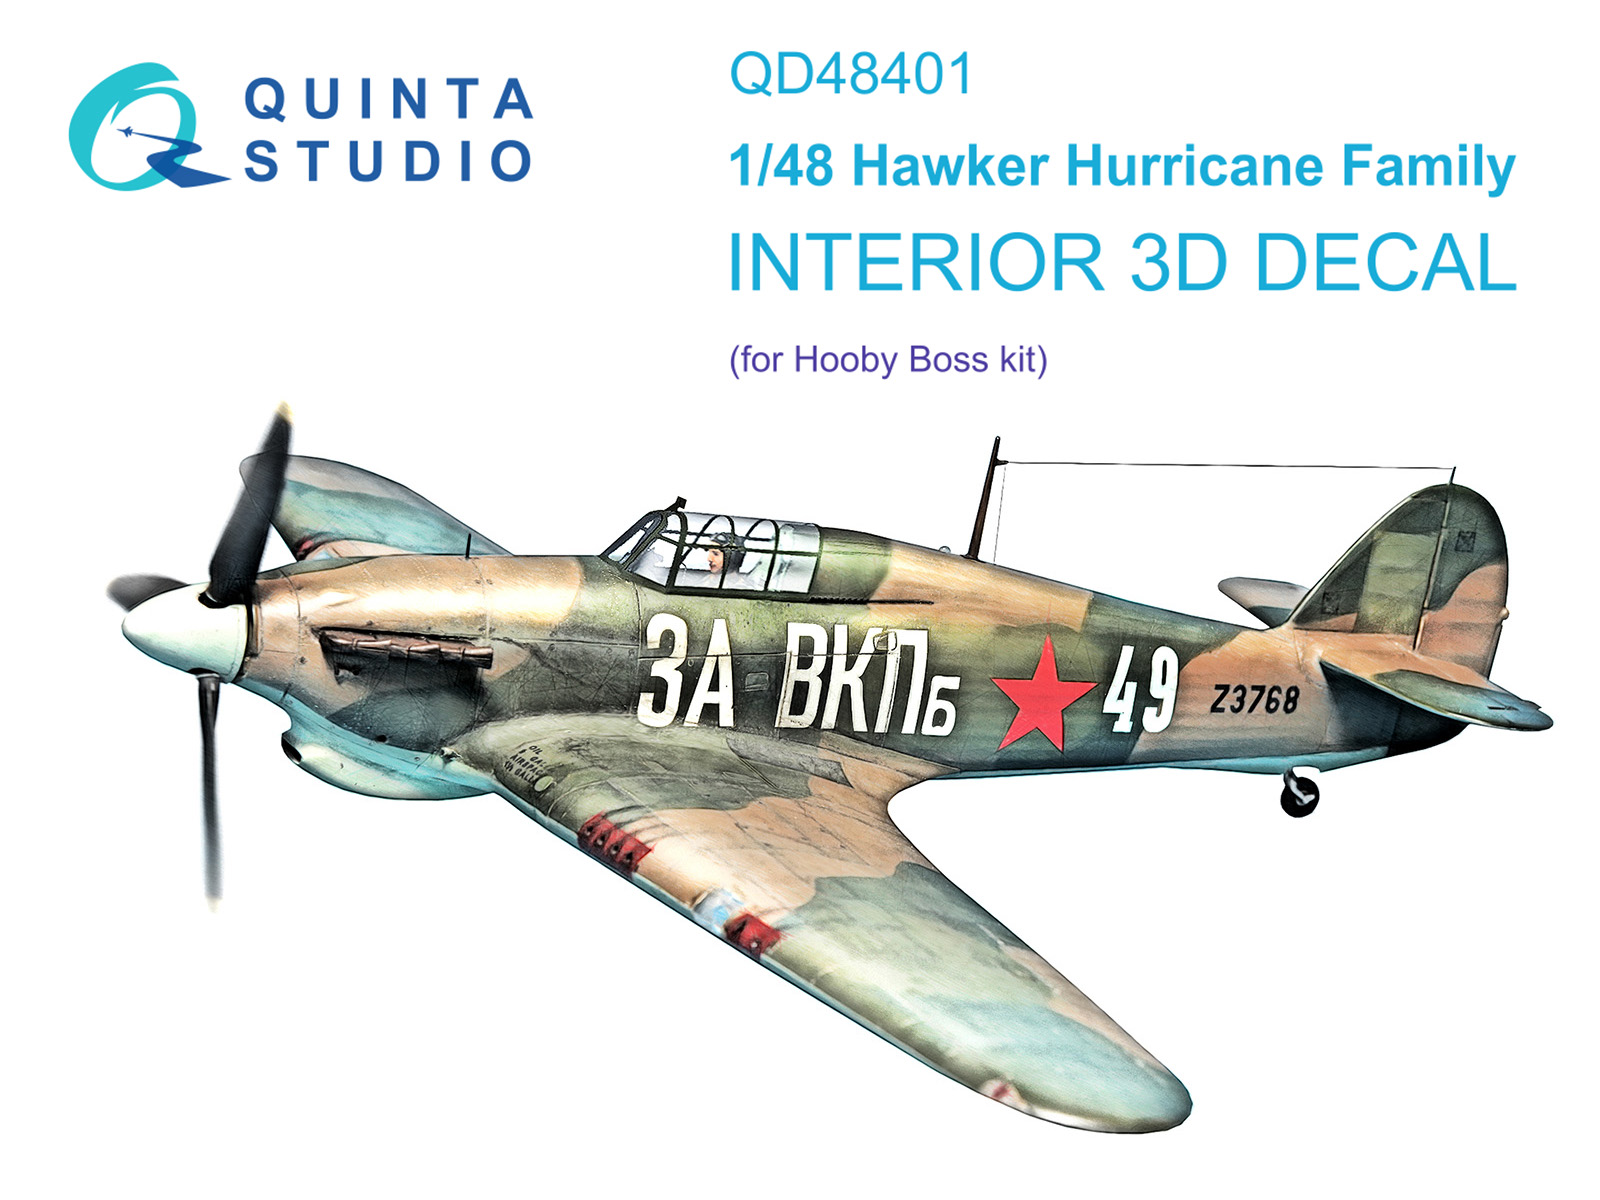 QD48401  декали  3D Декаль интерьера кабины семейства Hawker Hurricane (HobbyBoss)  (1:48)